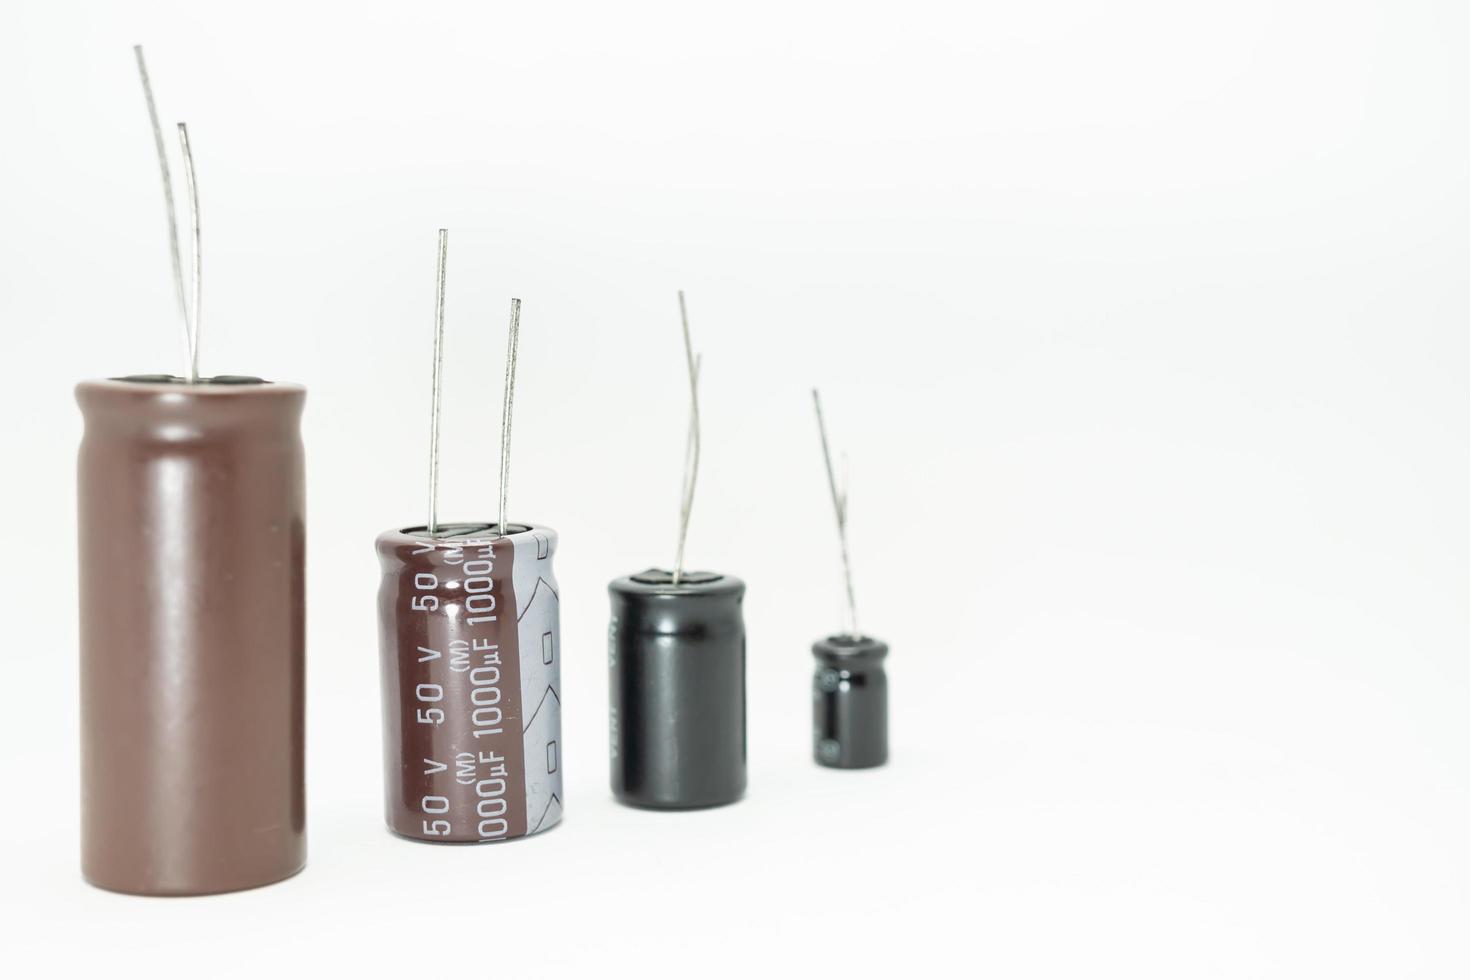 grupo isolado de capacitor, usado em dispositivo eletrônico. conceito de peças eletrônicas. foto